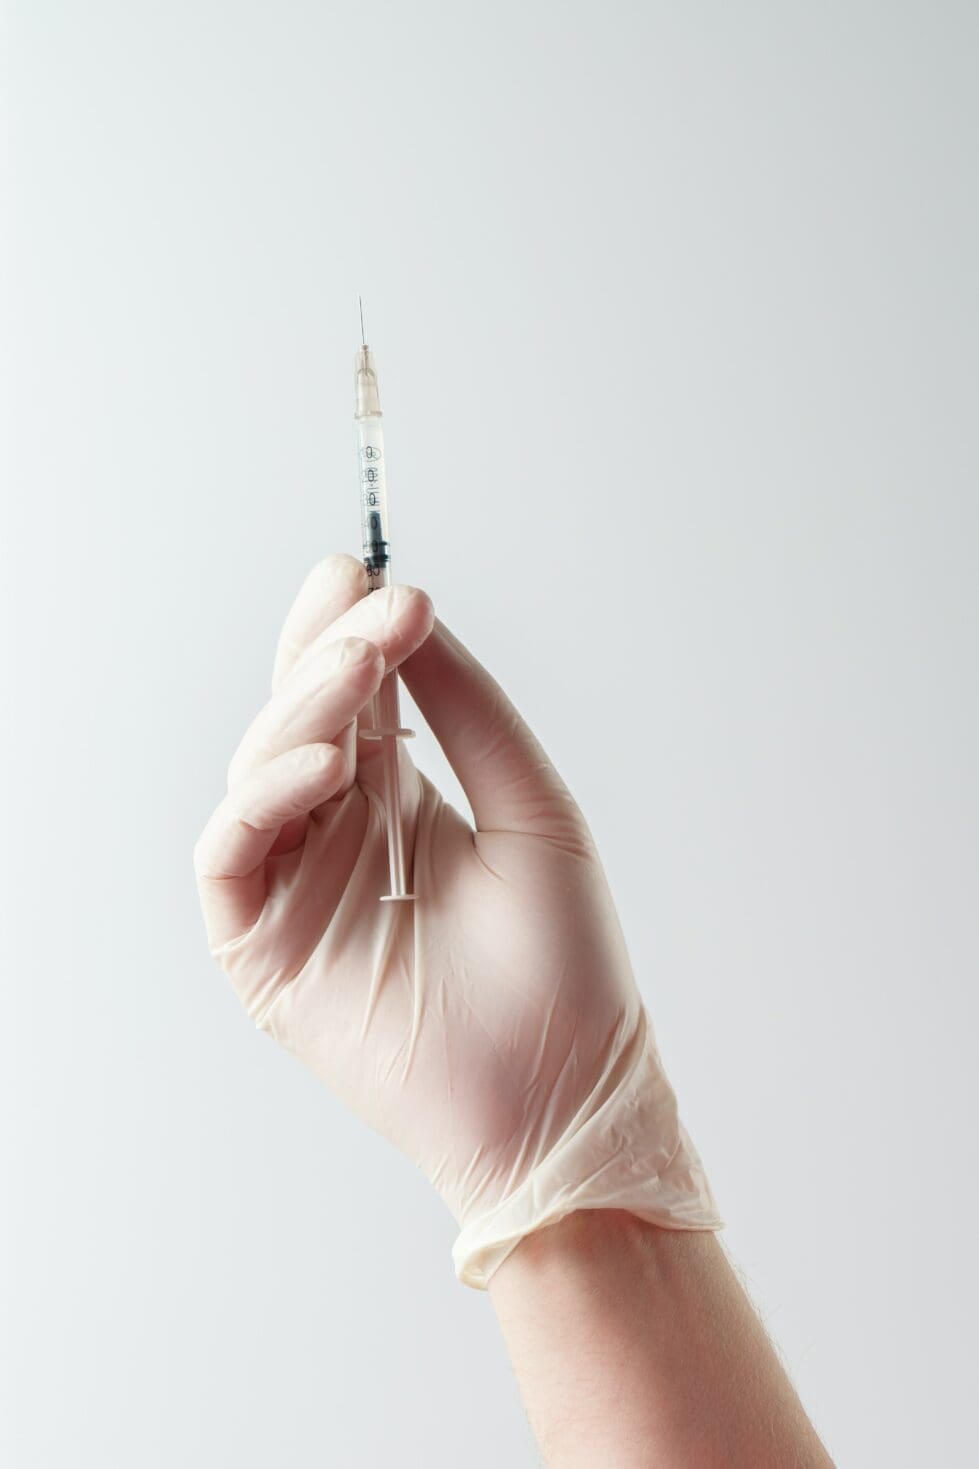 Clean needle